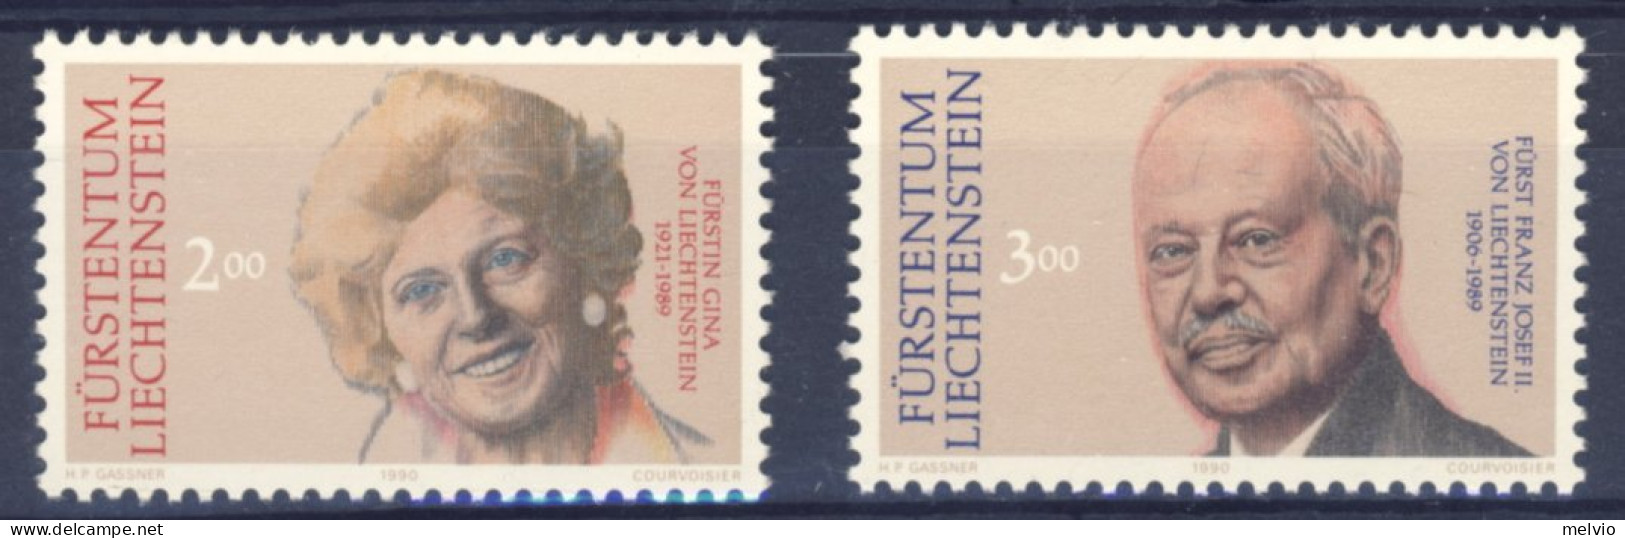 1990-Liechtenstein (MNH=**) Serie 2 Valori Principi - Ongebruikt